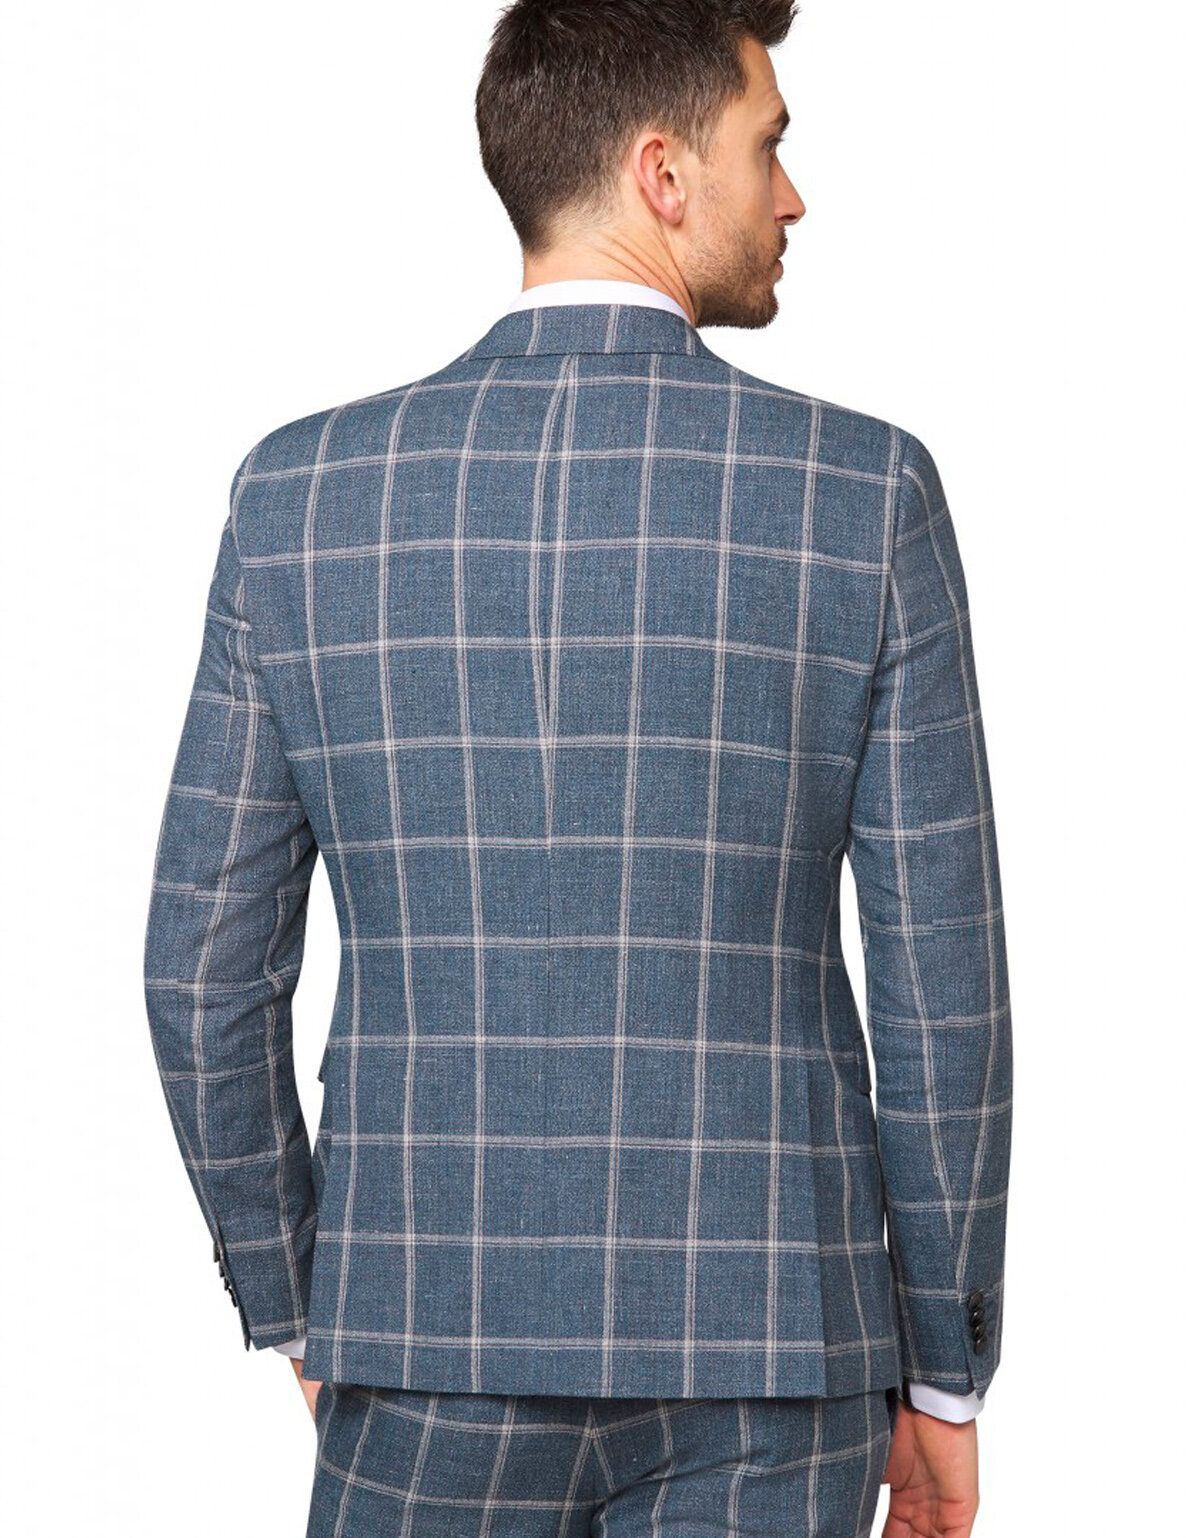 Мужской пиджак Digel льняной в крупную клетку | купить в интернет-магазине Olymp-Men